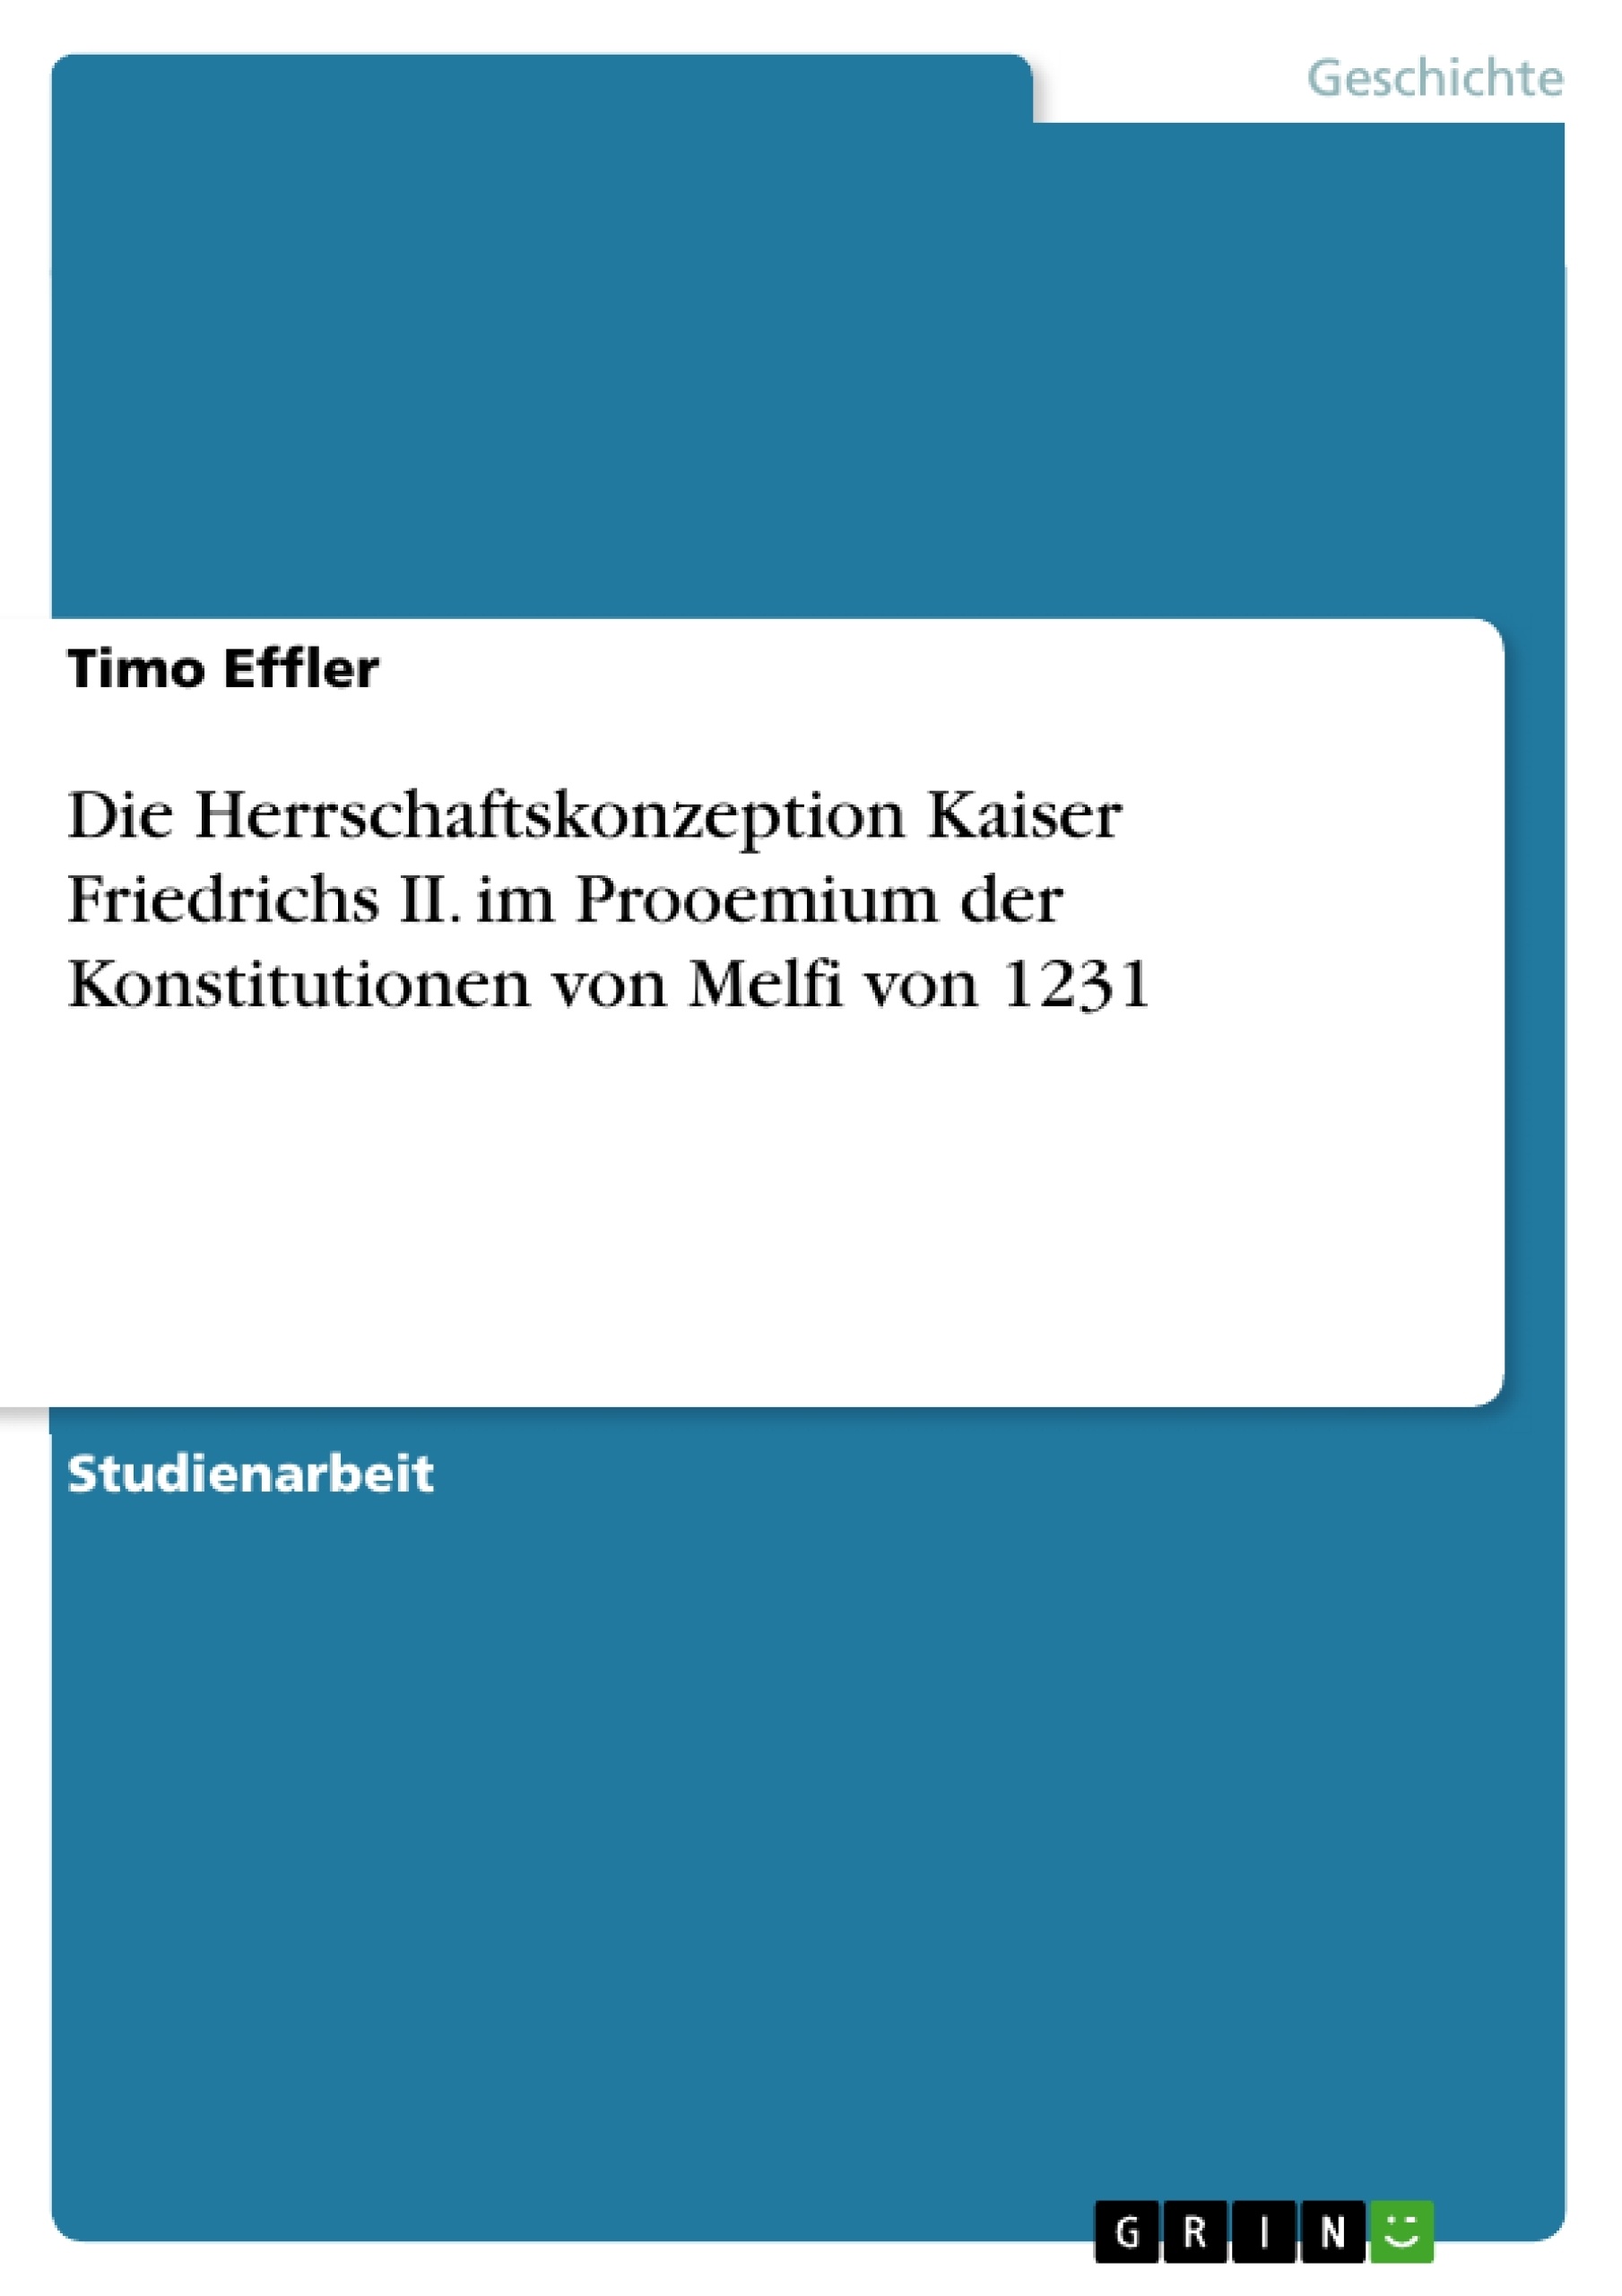 Titre: Die Herrschaftskonzeption Kaiser Friedrichs II. im Prooemium der Konstitutionen von Melfi von 1231